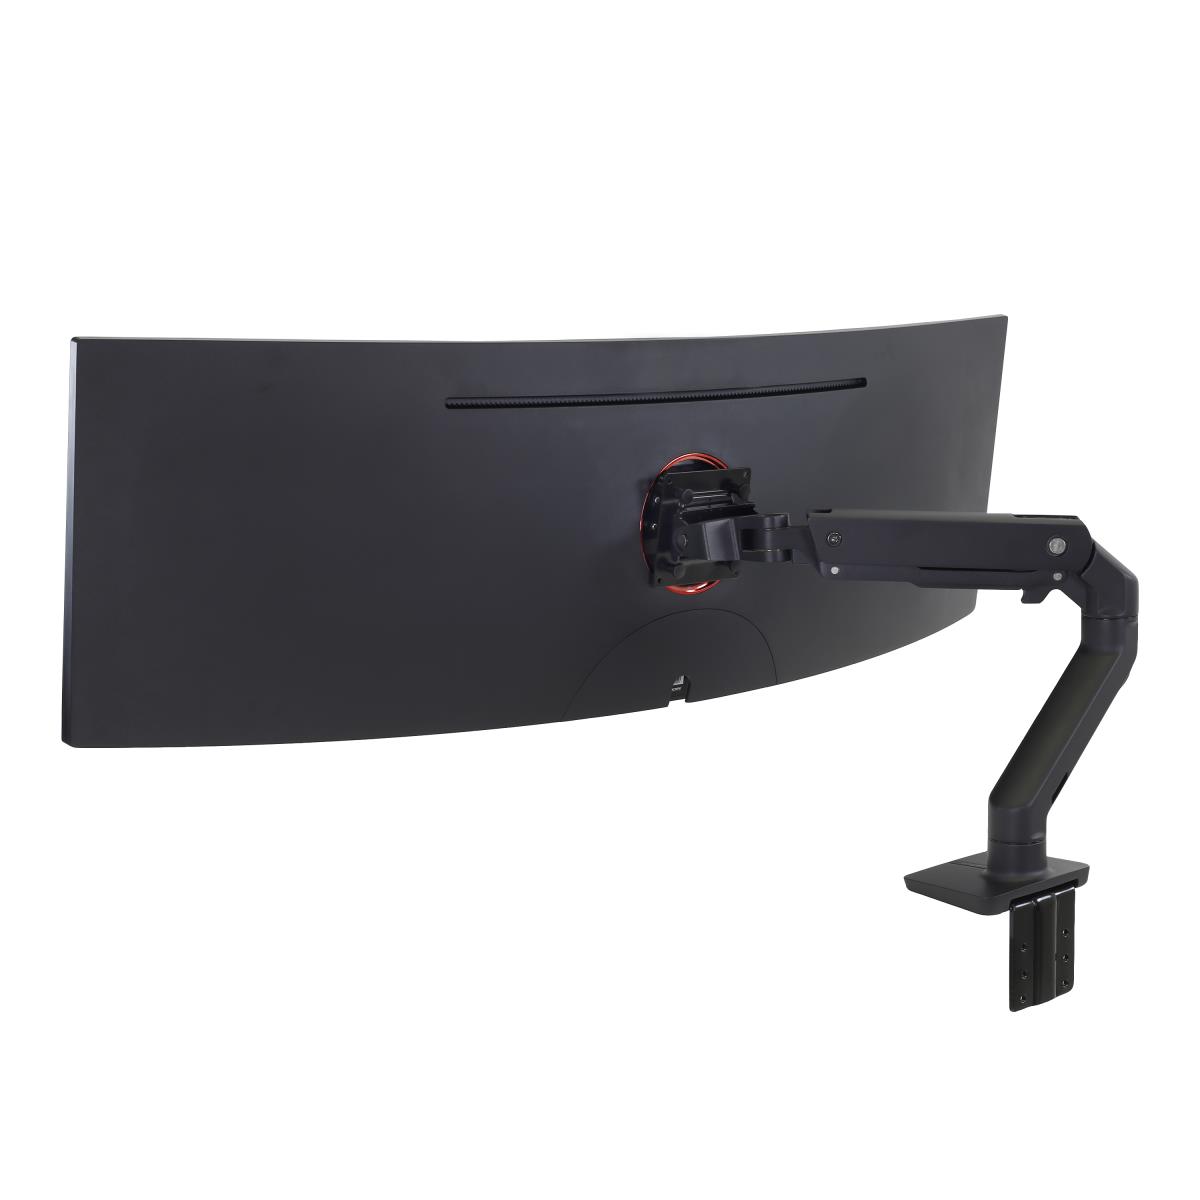 ERGOTRON Hx Desk Monitor Arm With Hd Pivot Matte Black - 45-647-224 -  /en